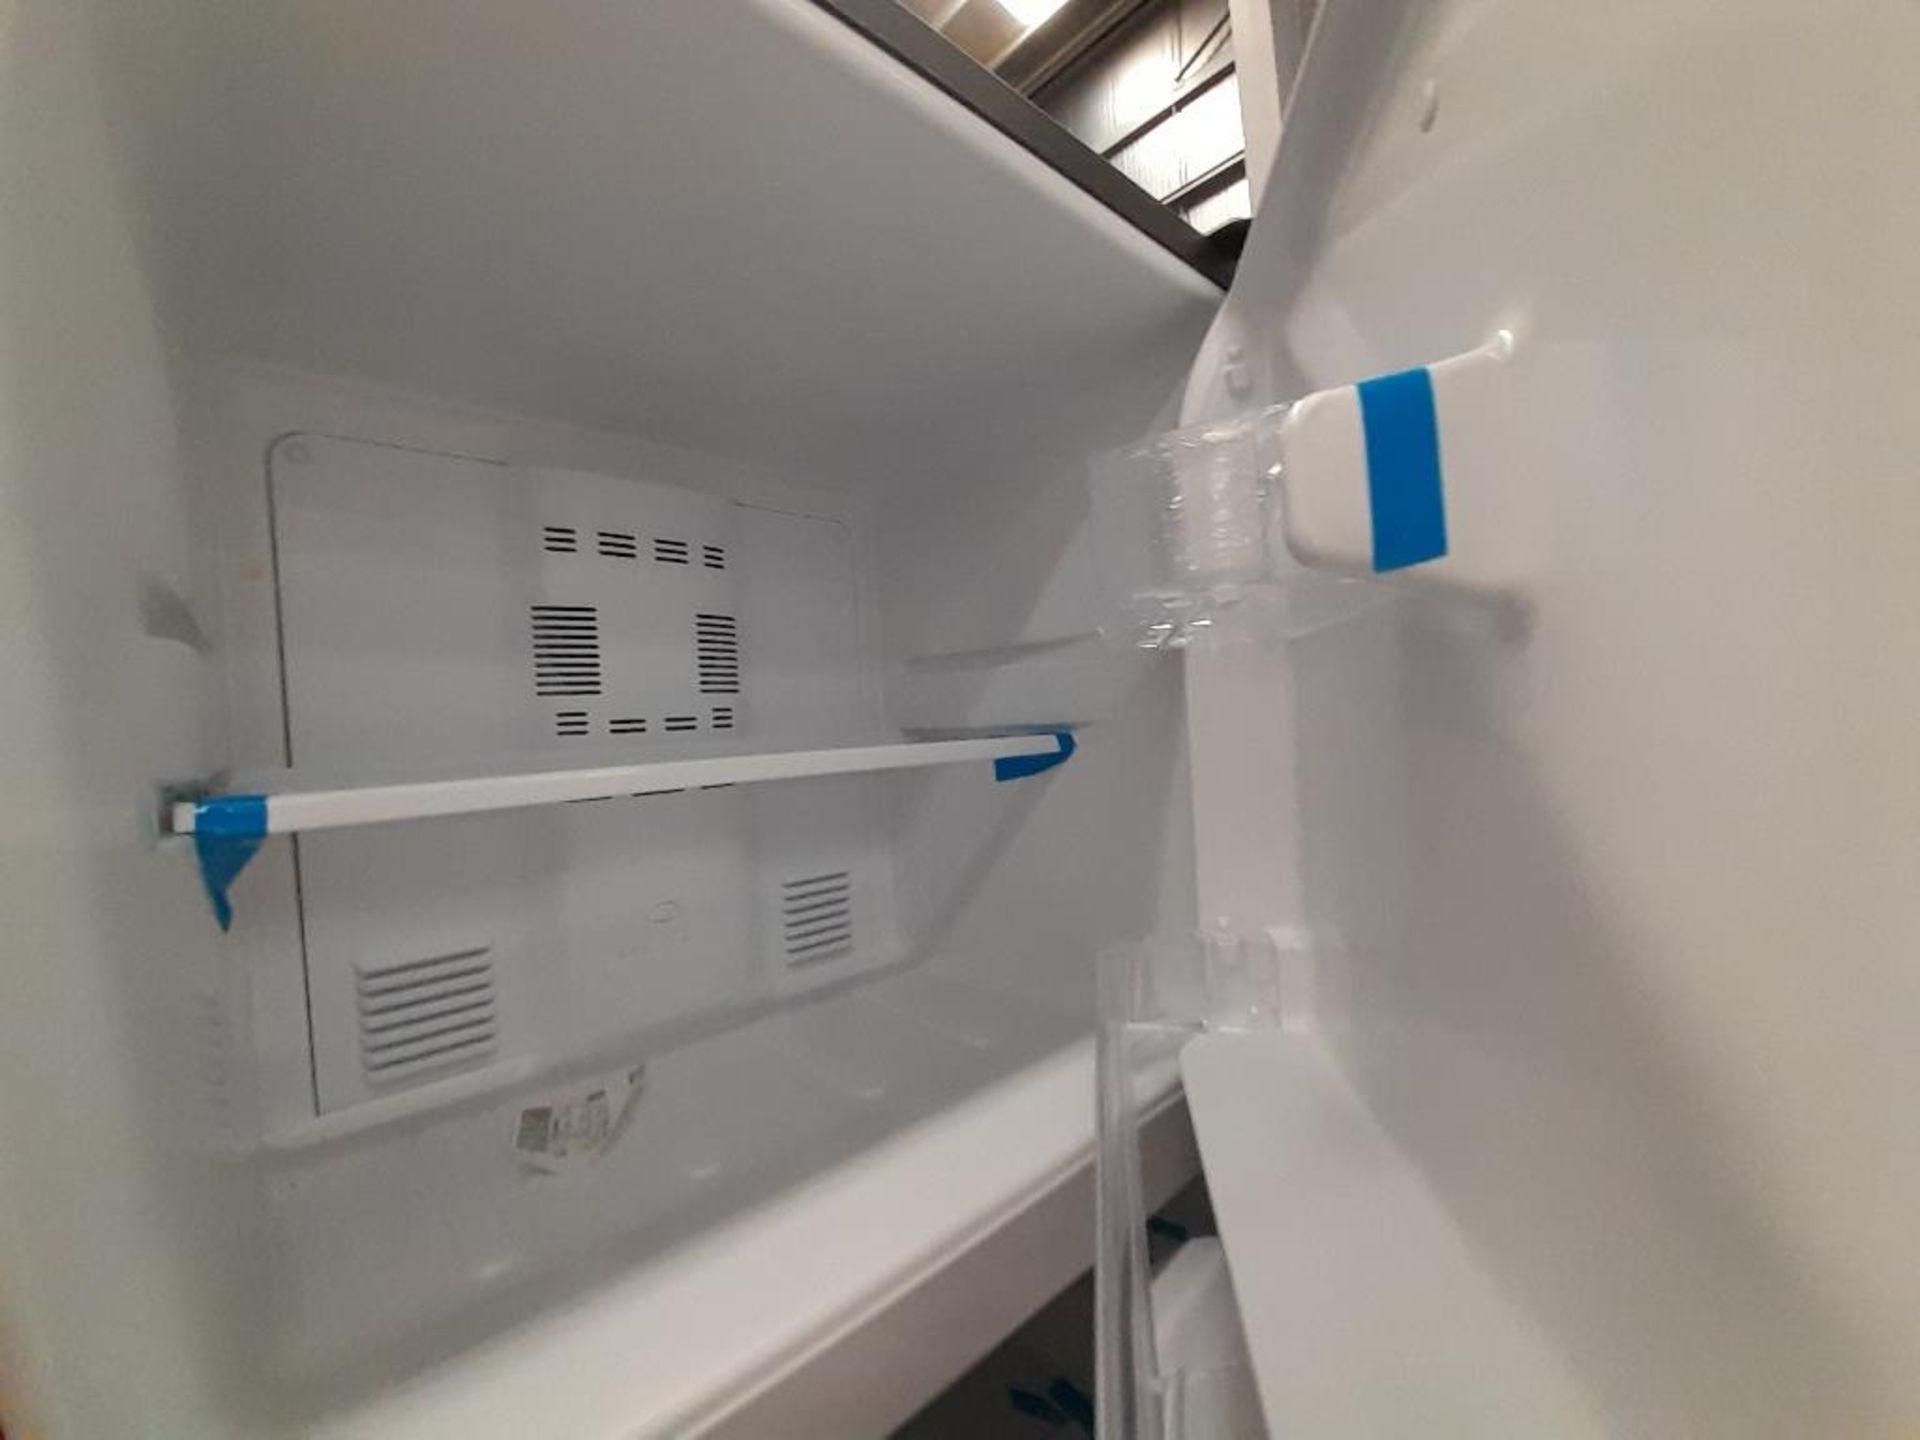 Lote de 2 refrigeradores contiene: 1 Refrigerador Con Dispensador De Agua MABE, Modelo FJMRDA, Seri - Image 6 of 8